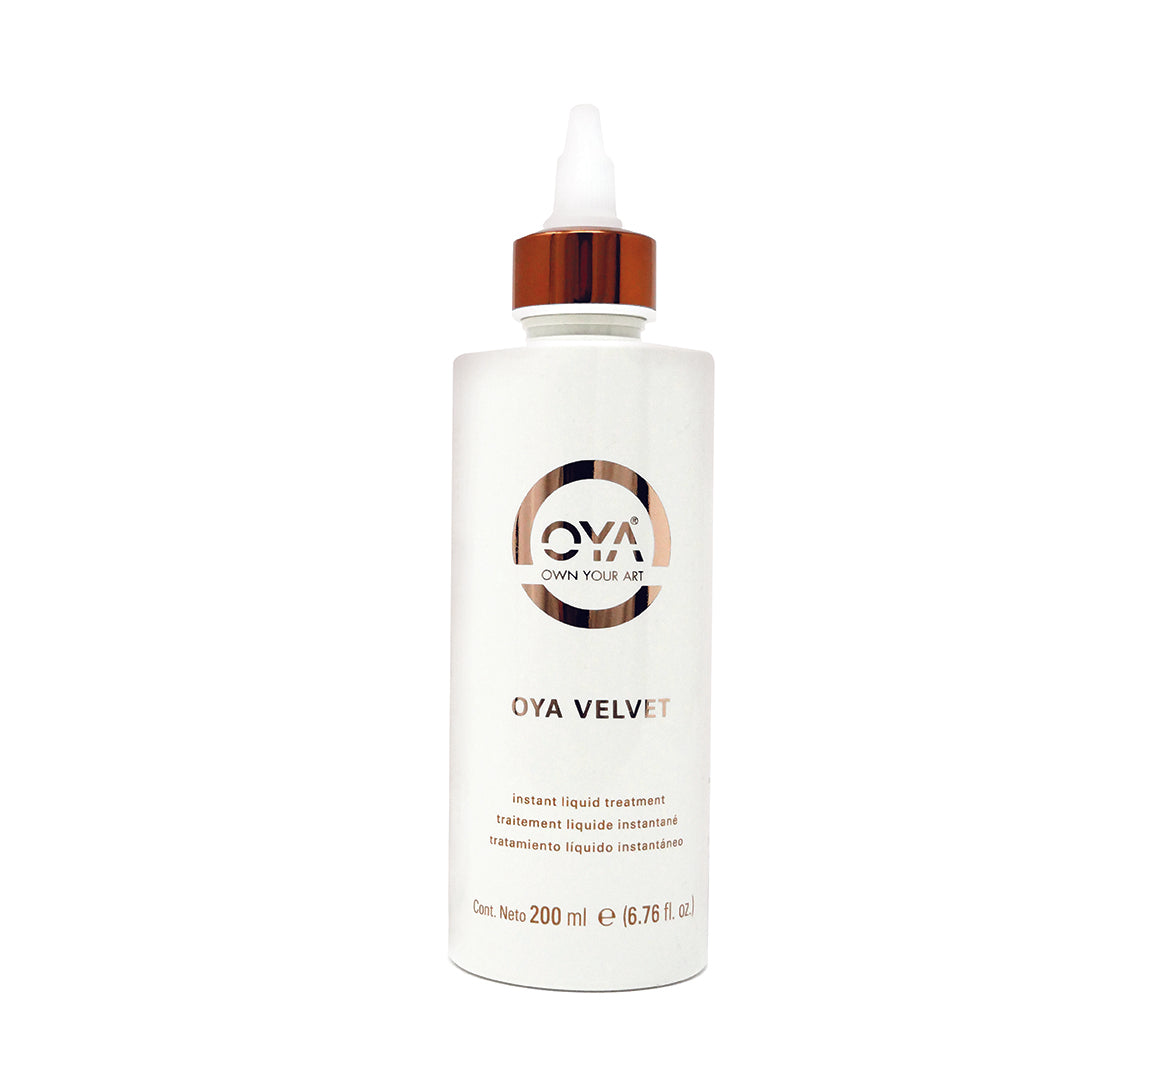 OYA Velvet Instant Liquid Treatment